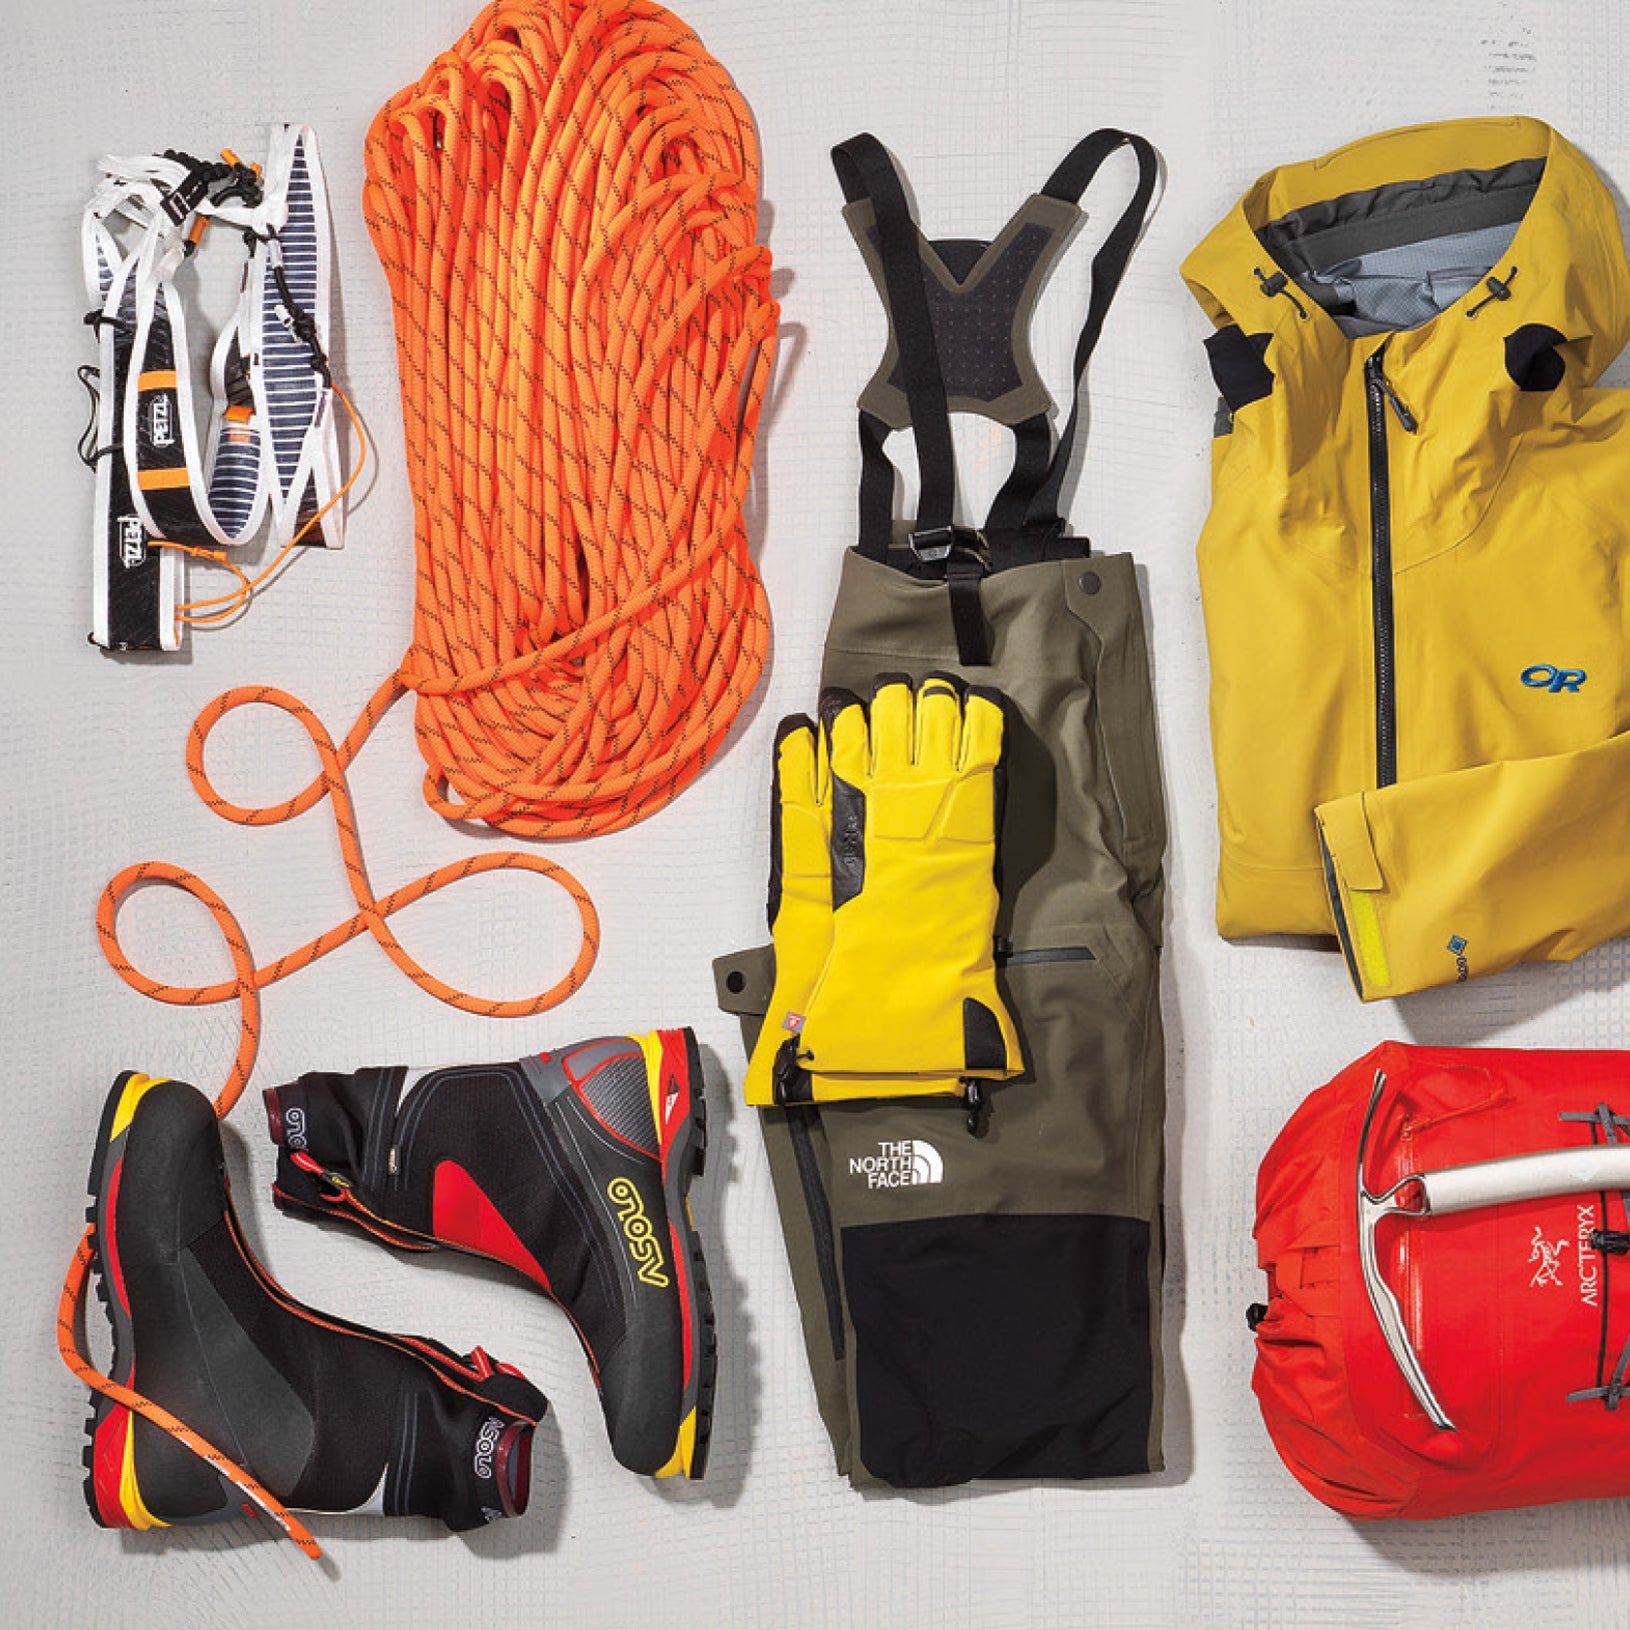 Backcountry Gear - Climbing Gear, Hiking Gear, Backpacking Gear, Camping  Equipment